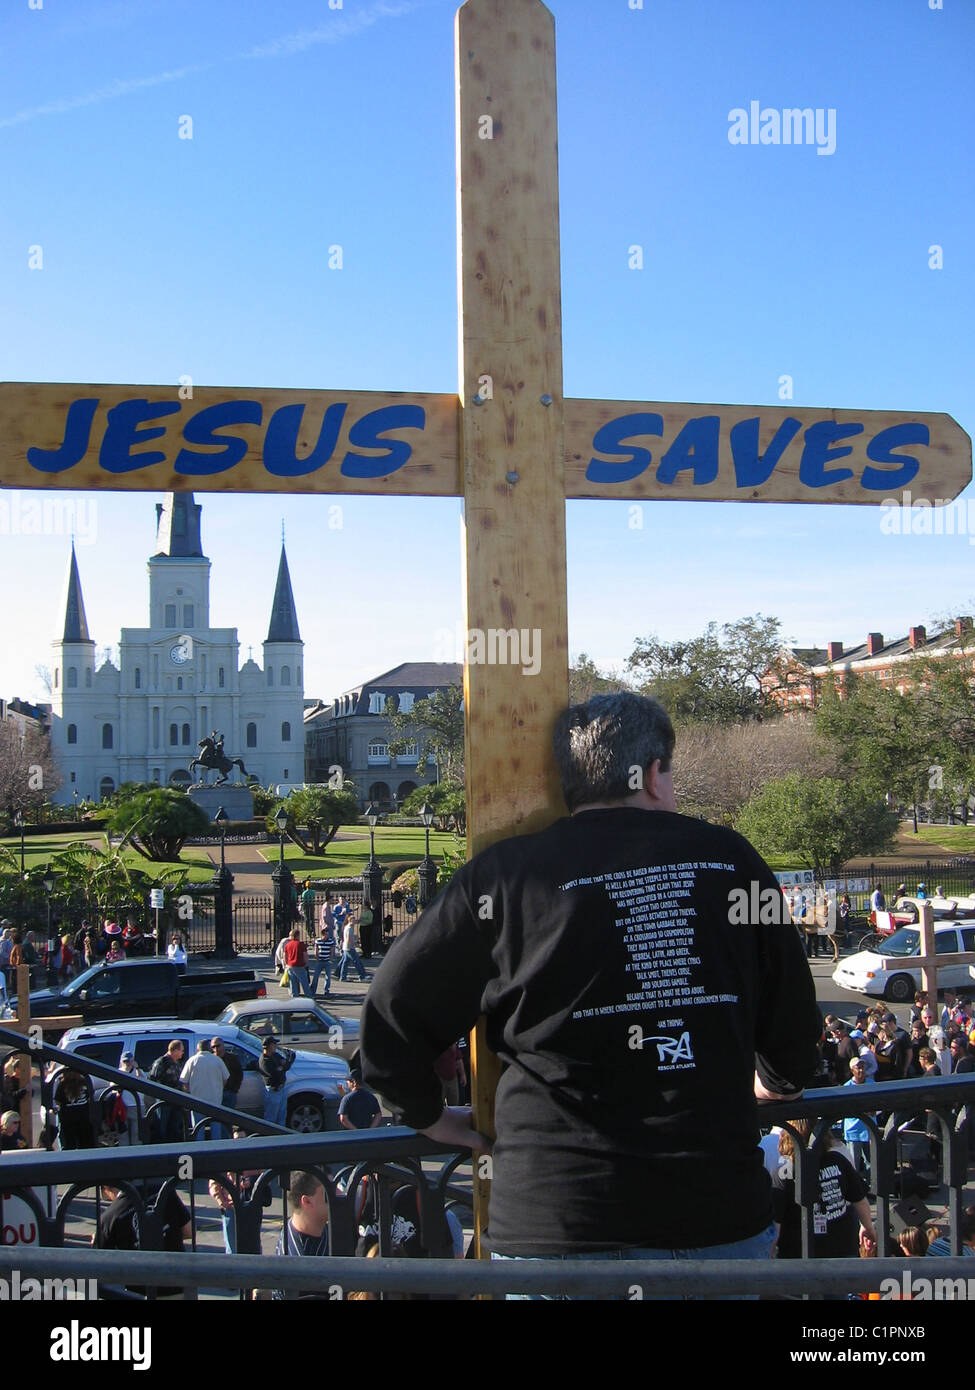 La Nouvelle Orléans. USA. Vue arrière d'un homme adulte manifestant religieux sur une croix en bois avec balcon holding les mots "Jésus sauve". Banque D'Images